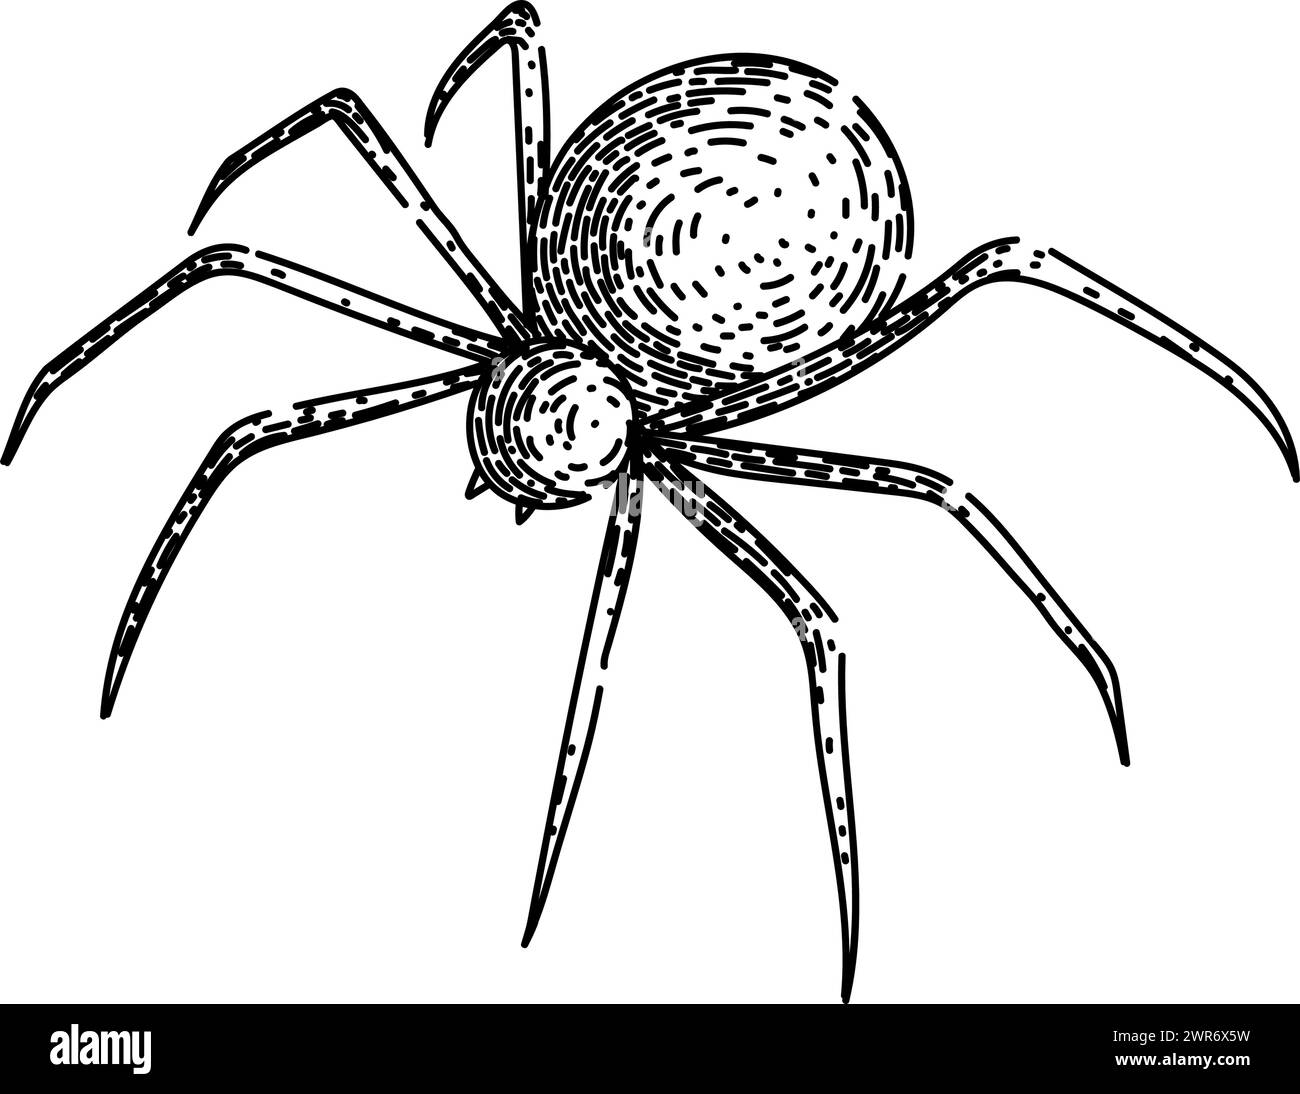 Handgezeichneter Vektor der Spider-Skizze Stock Vektor